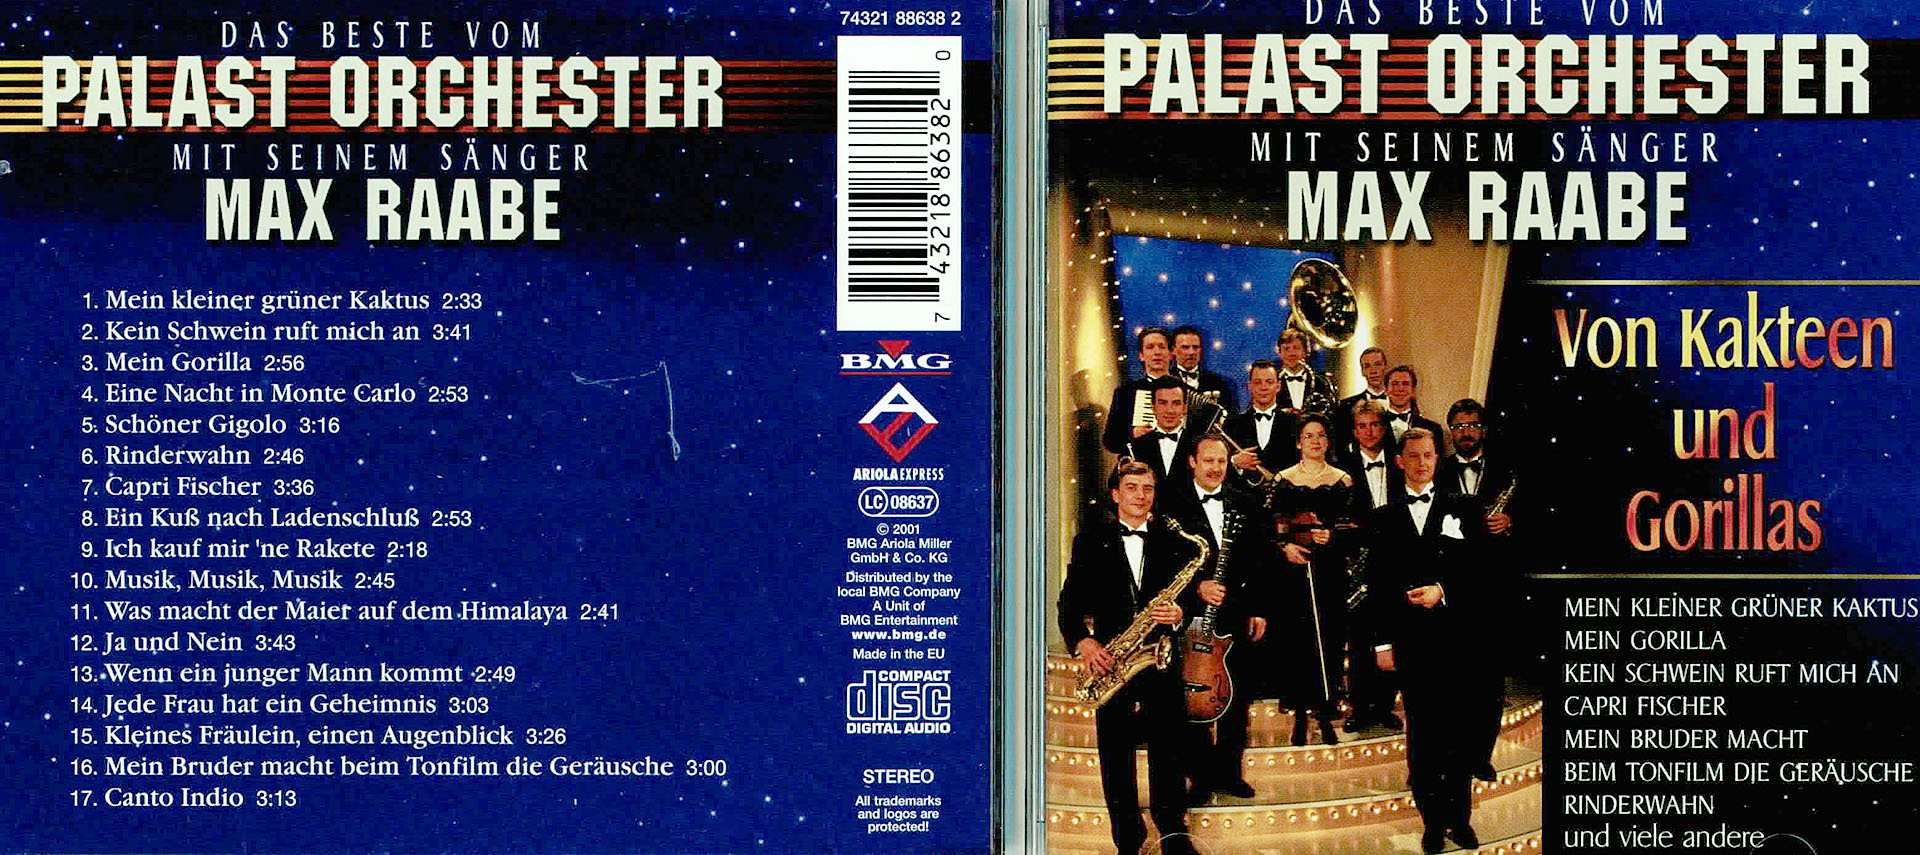 Von Kakteen und Gorillas - Palasr Orchester Max Rabe